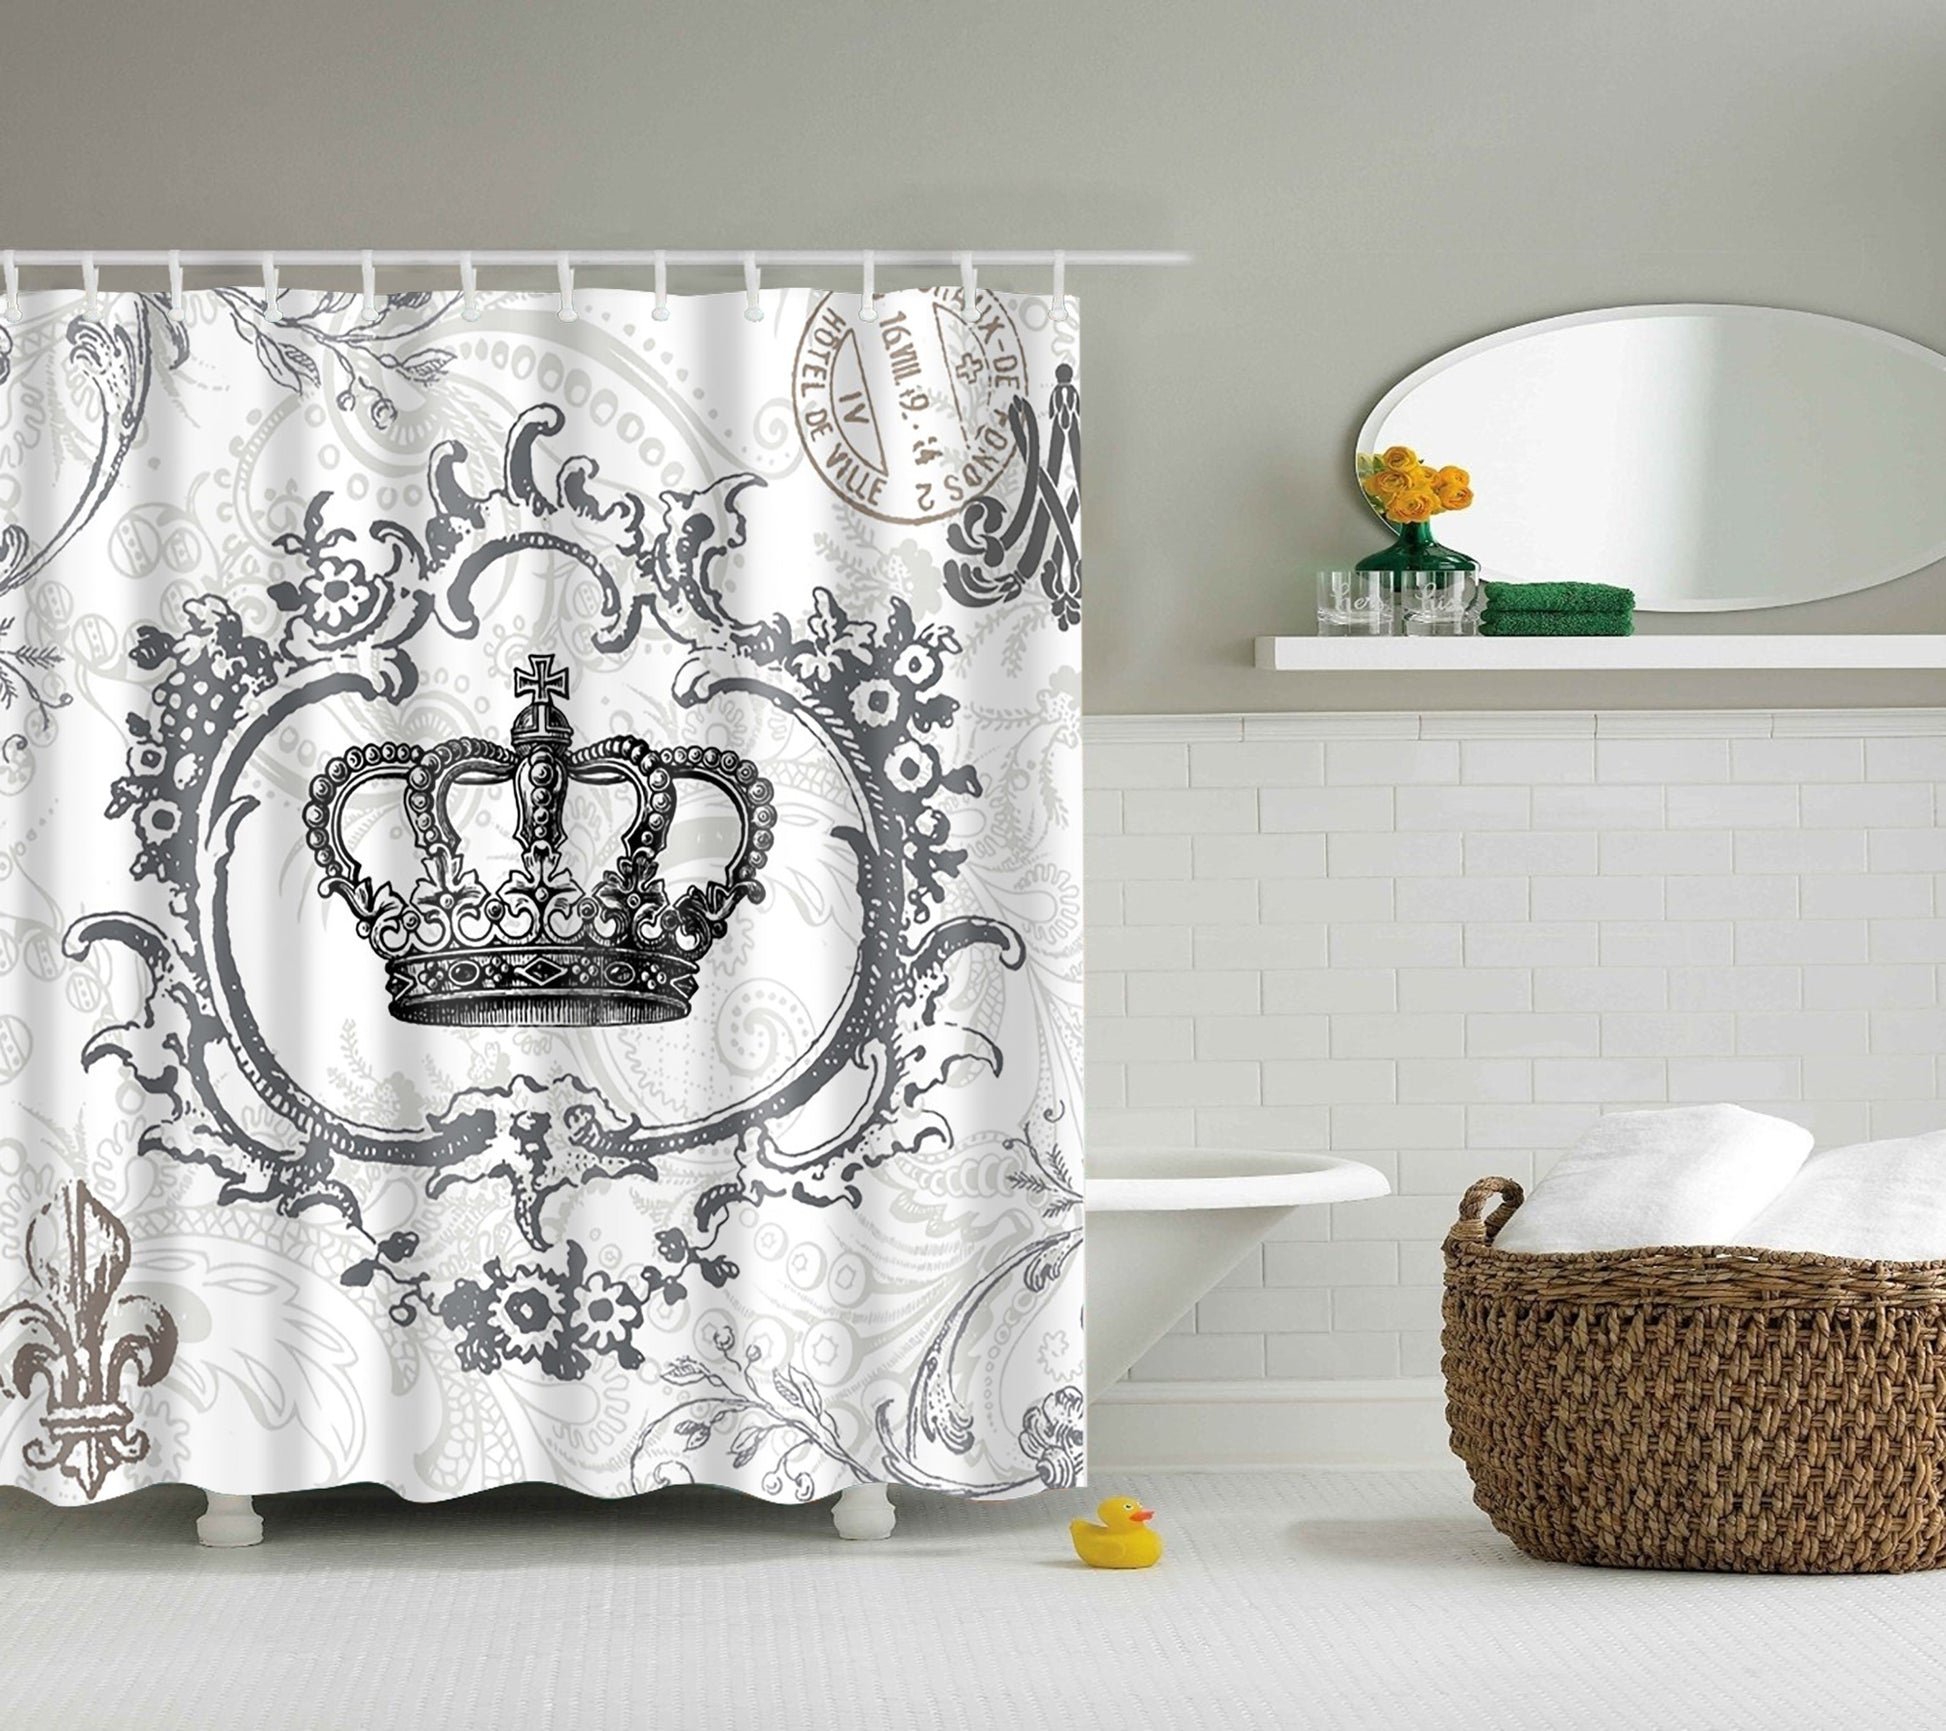 Elegance Queen Crown Design Shower Curtain